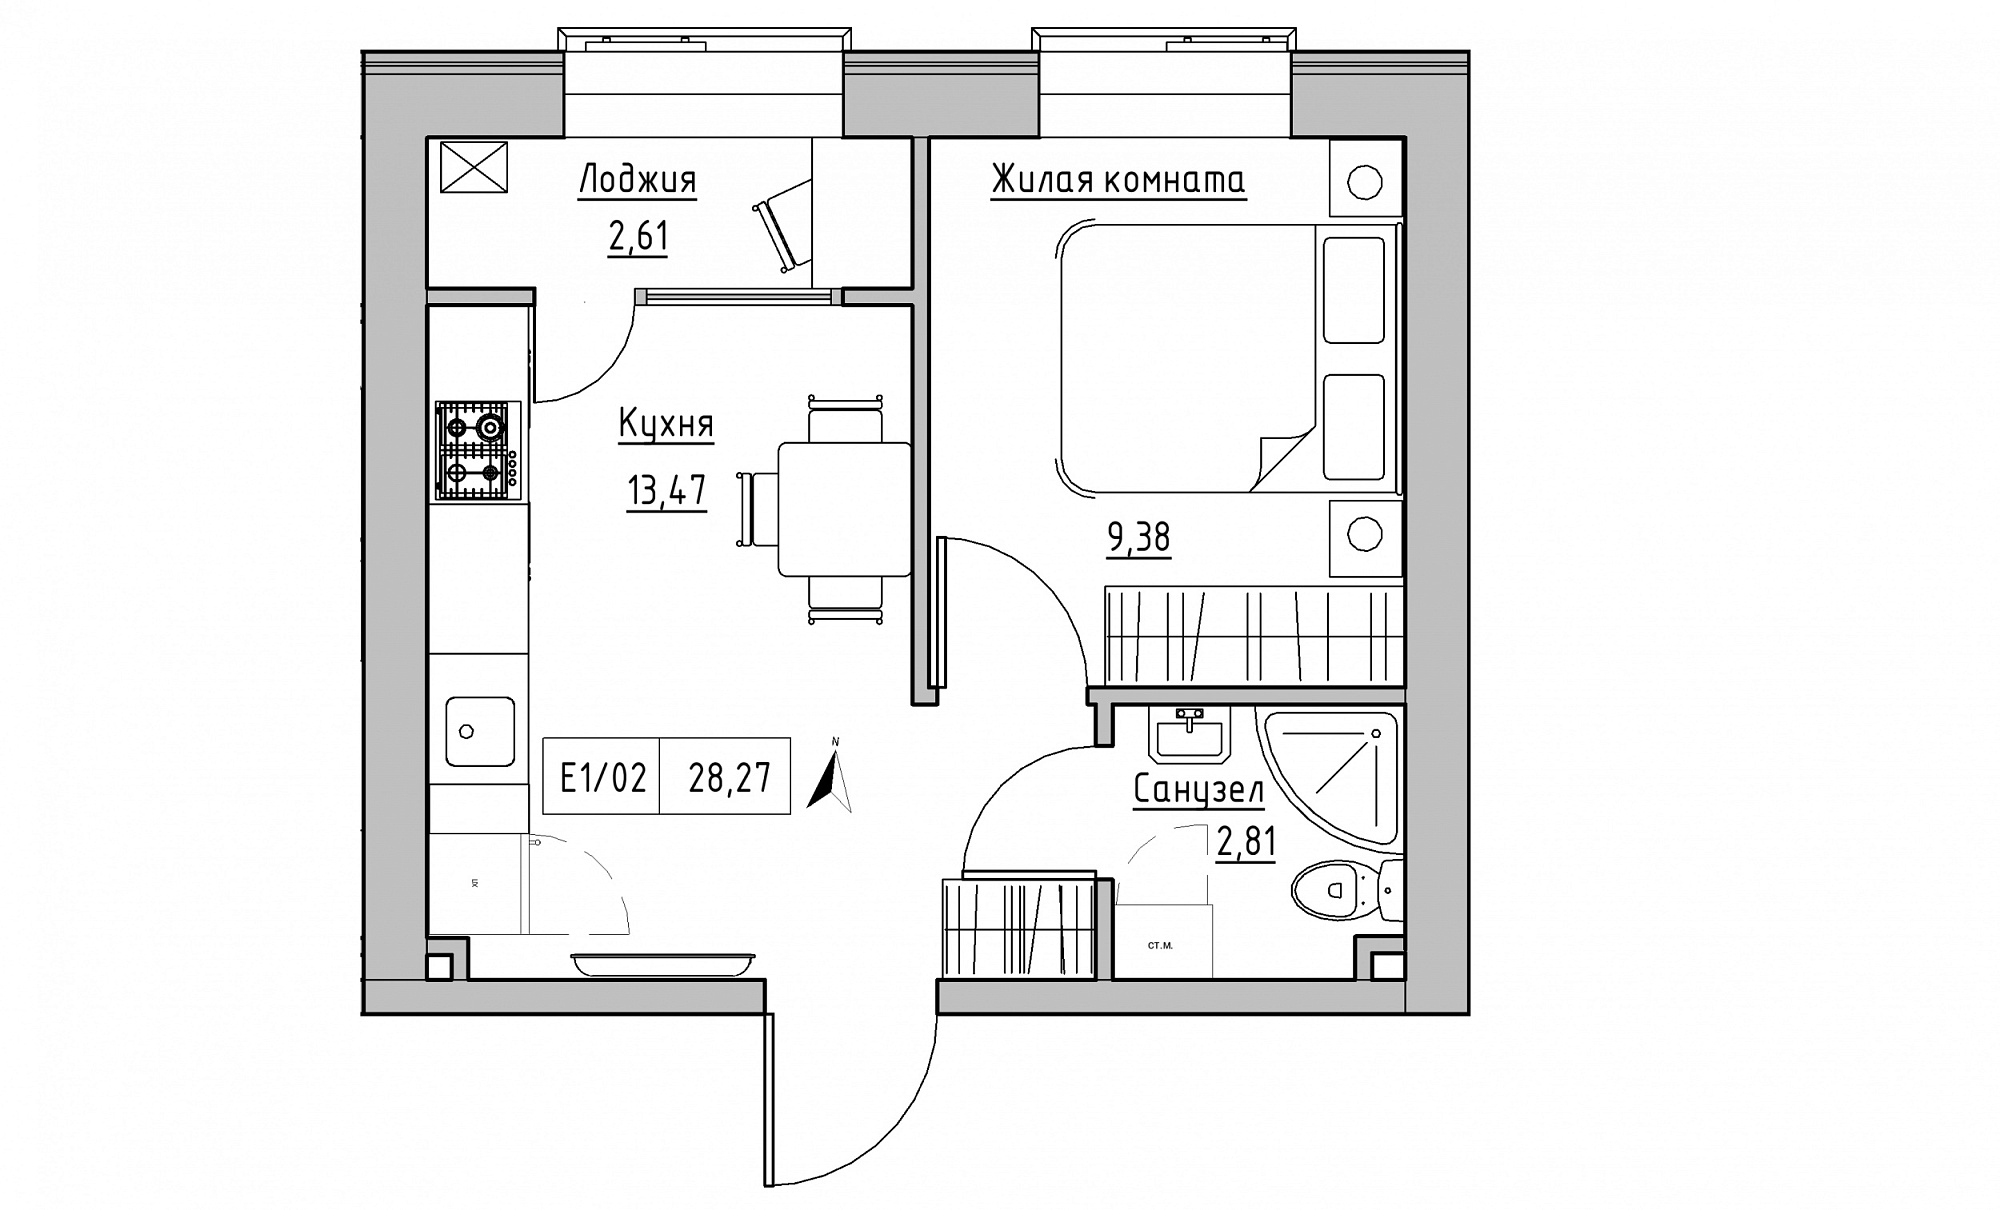 Планировка 1-к квартира площей 28.27м2, KS-015-01/0015.